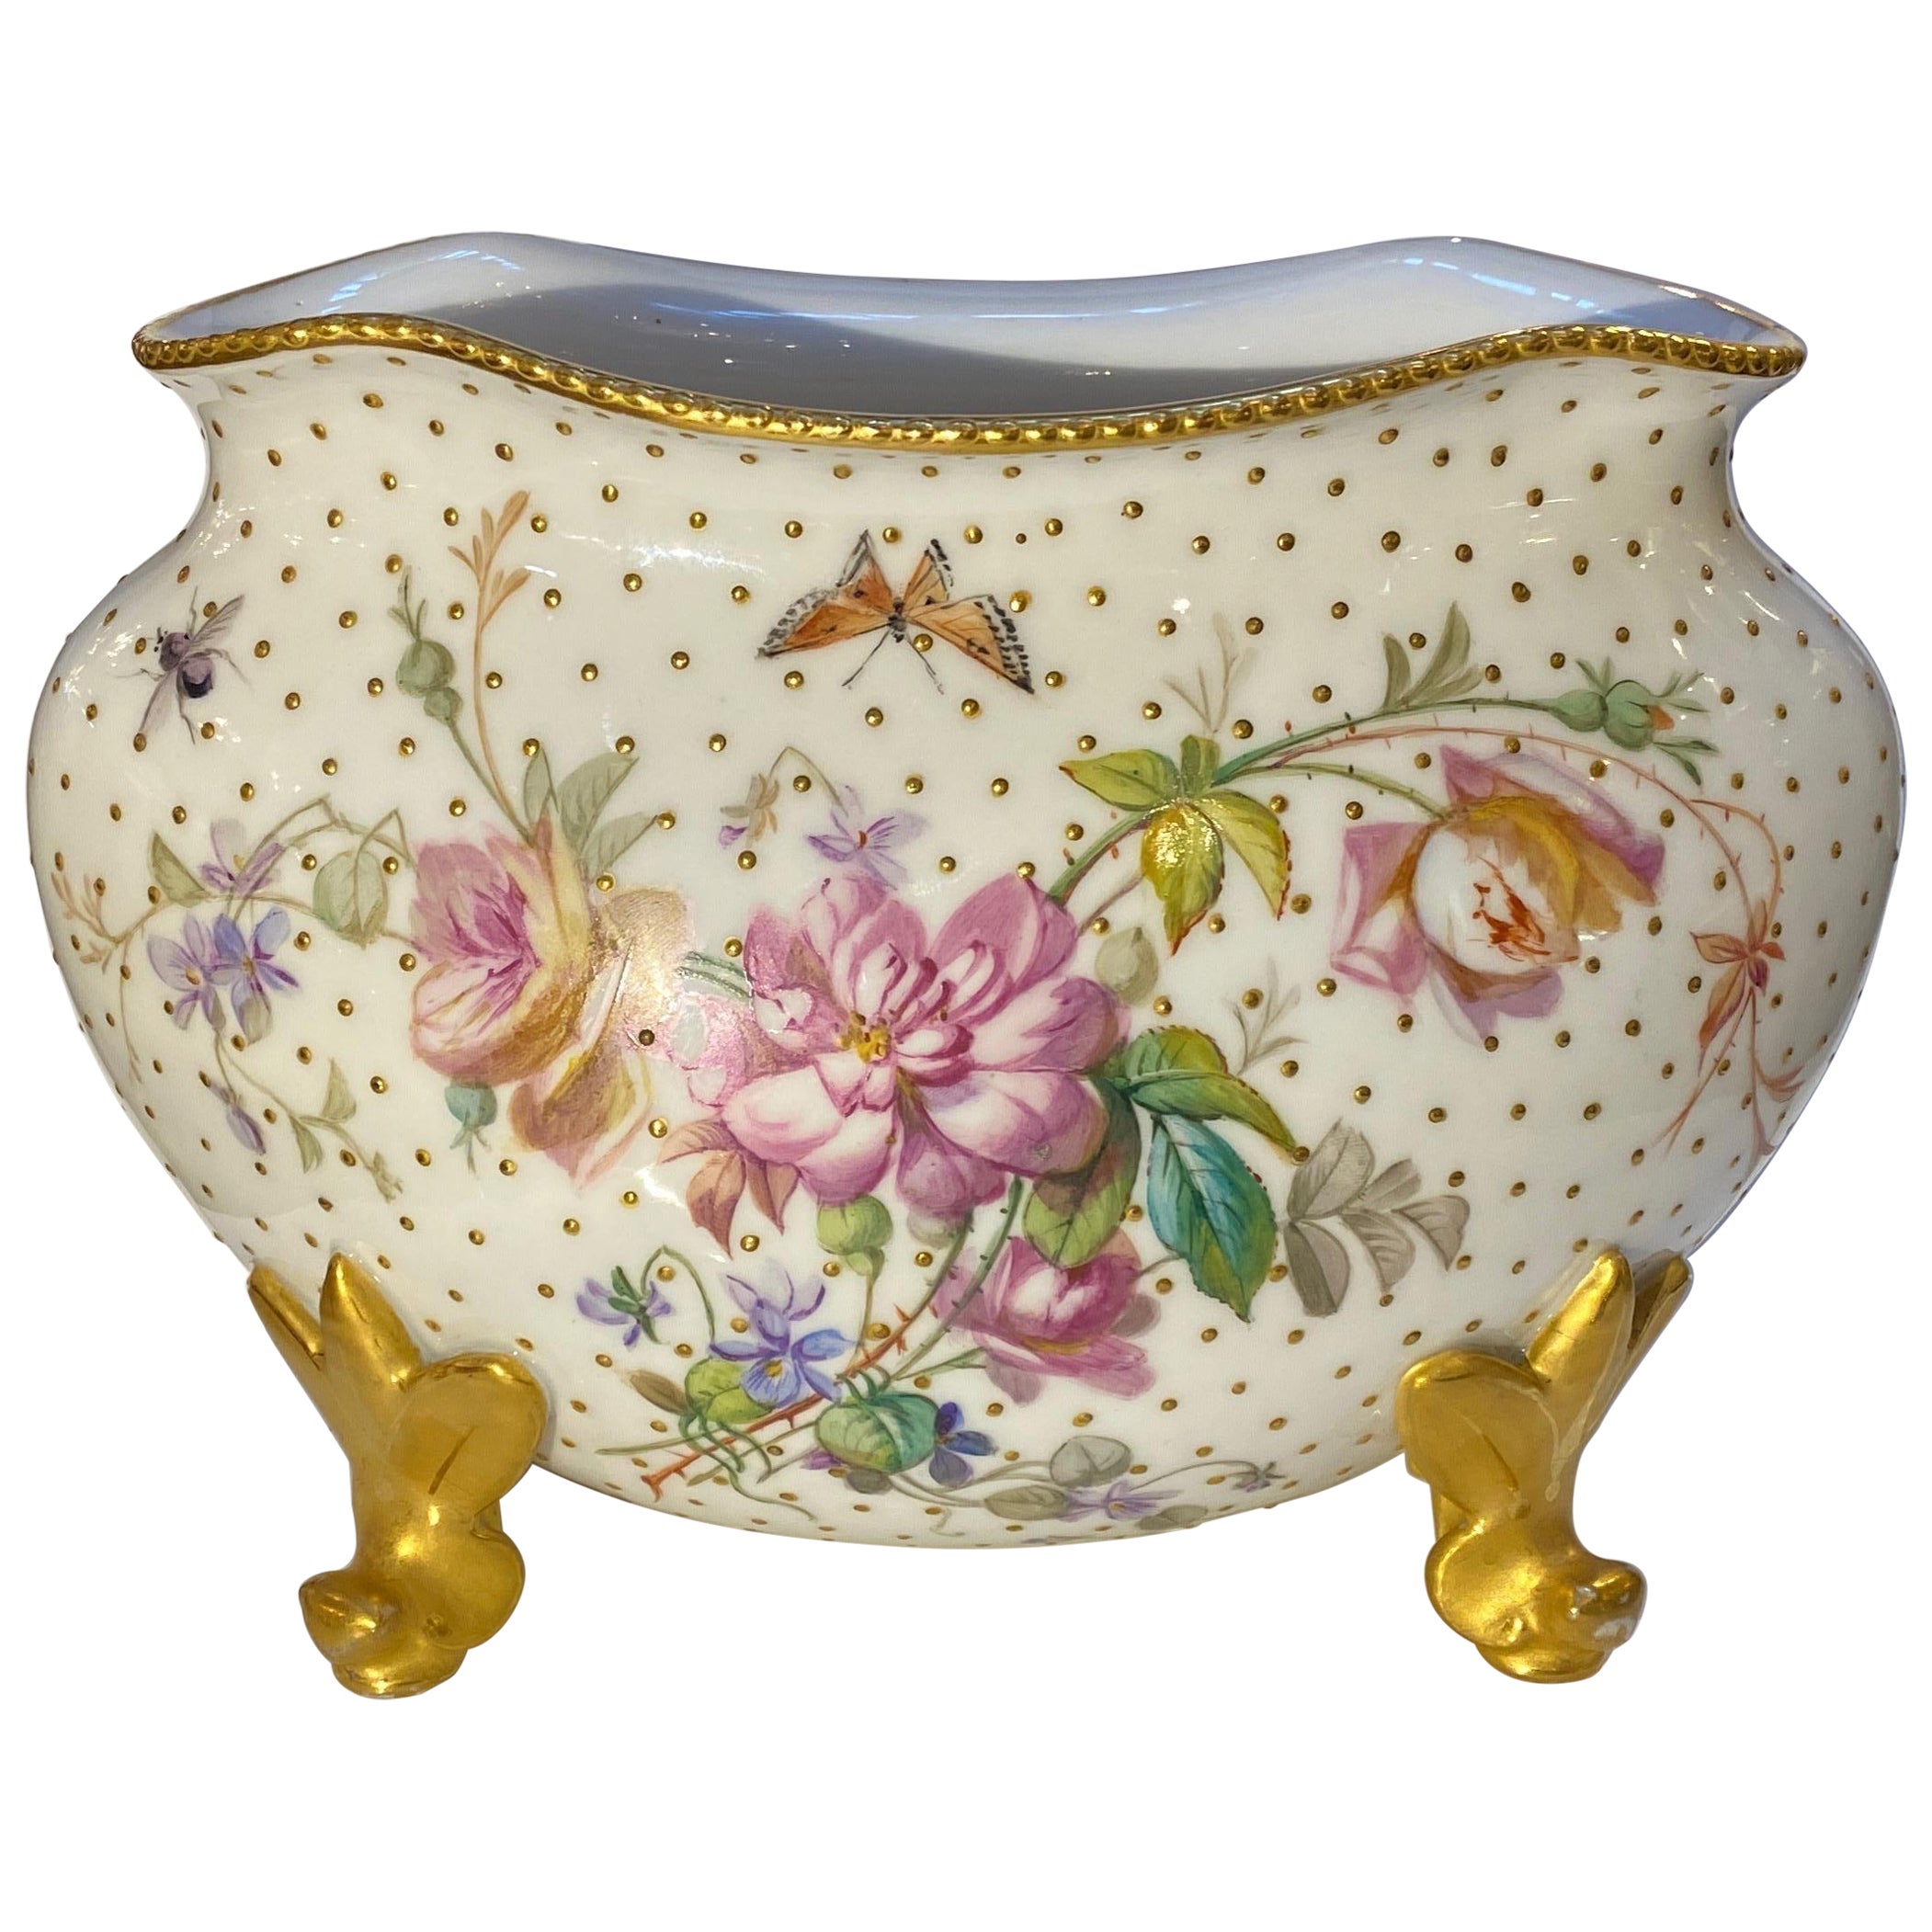 Ovale englische handbemalte Coalport-Porzellanvase aus dem 19. Jahrhundert